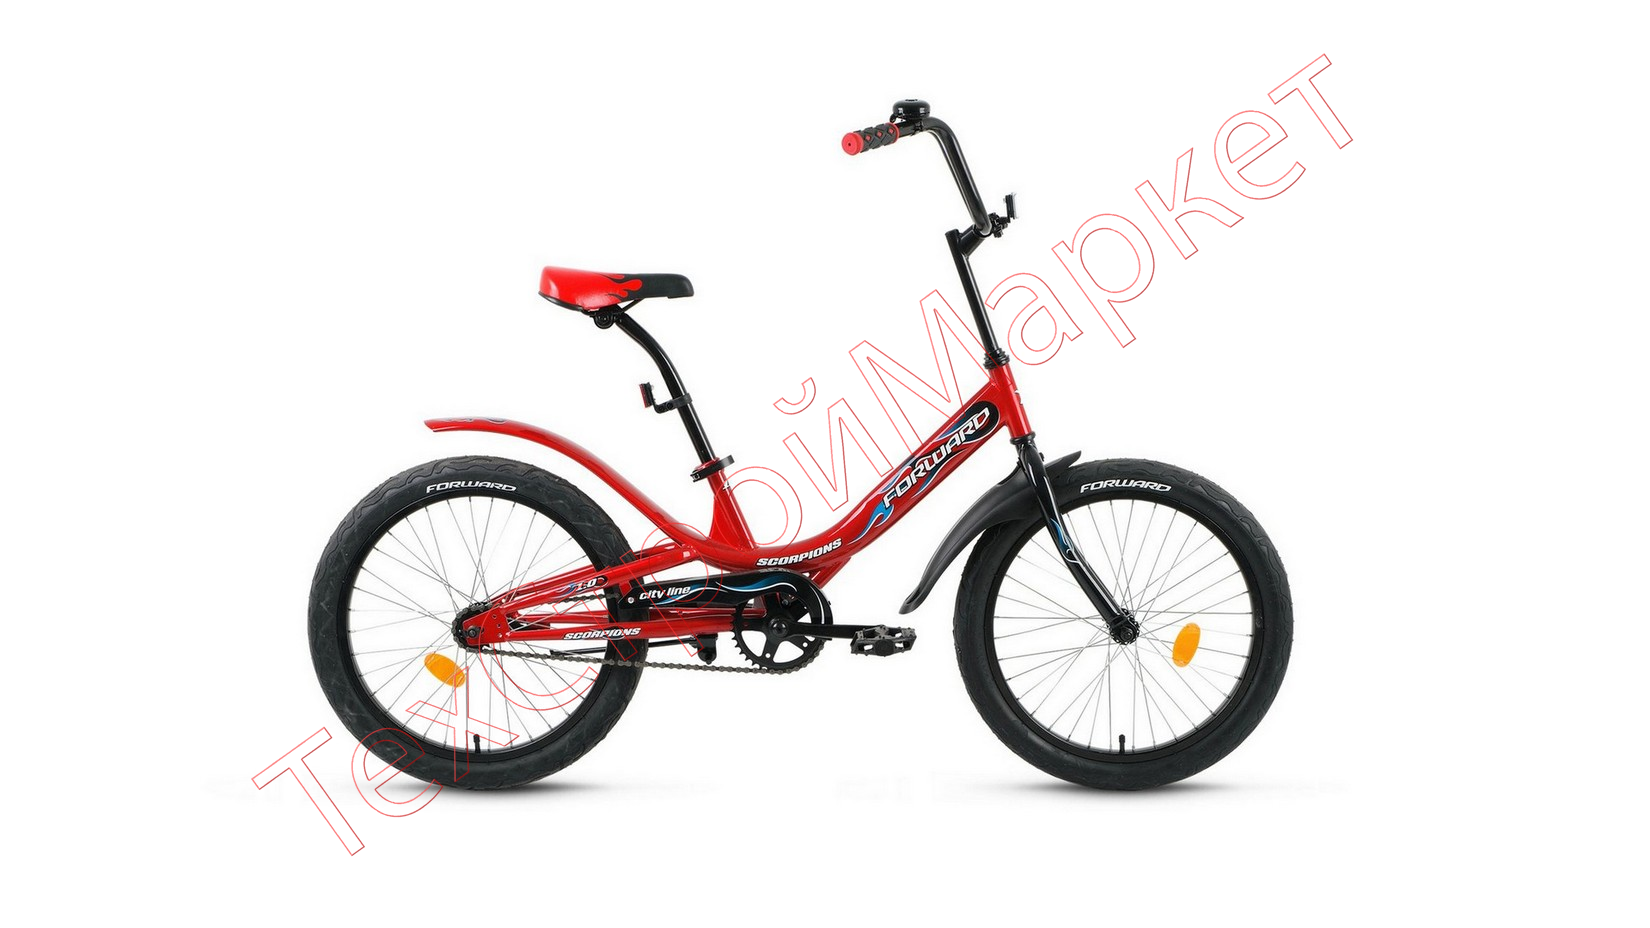 Велосипед SCORPIONS 20 1.0 20" (рост 10.5") 2020-2021, красный/черный, RBKW15N01002